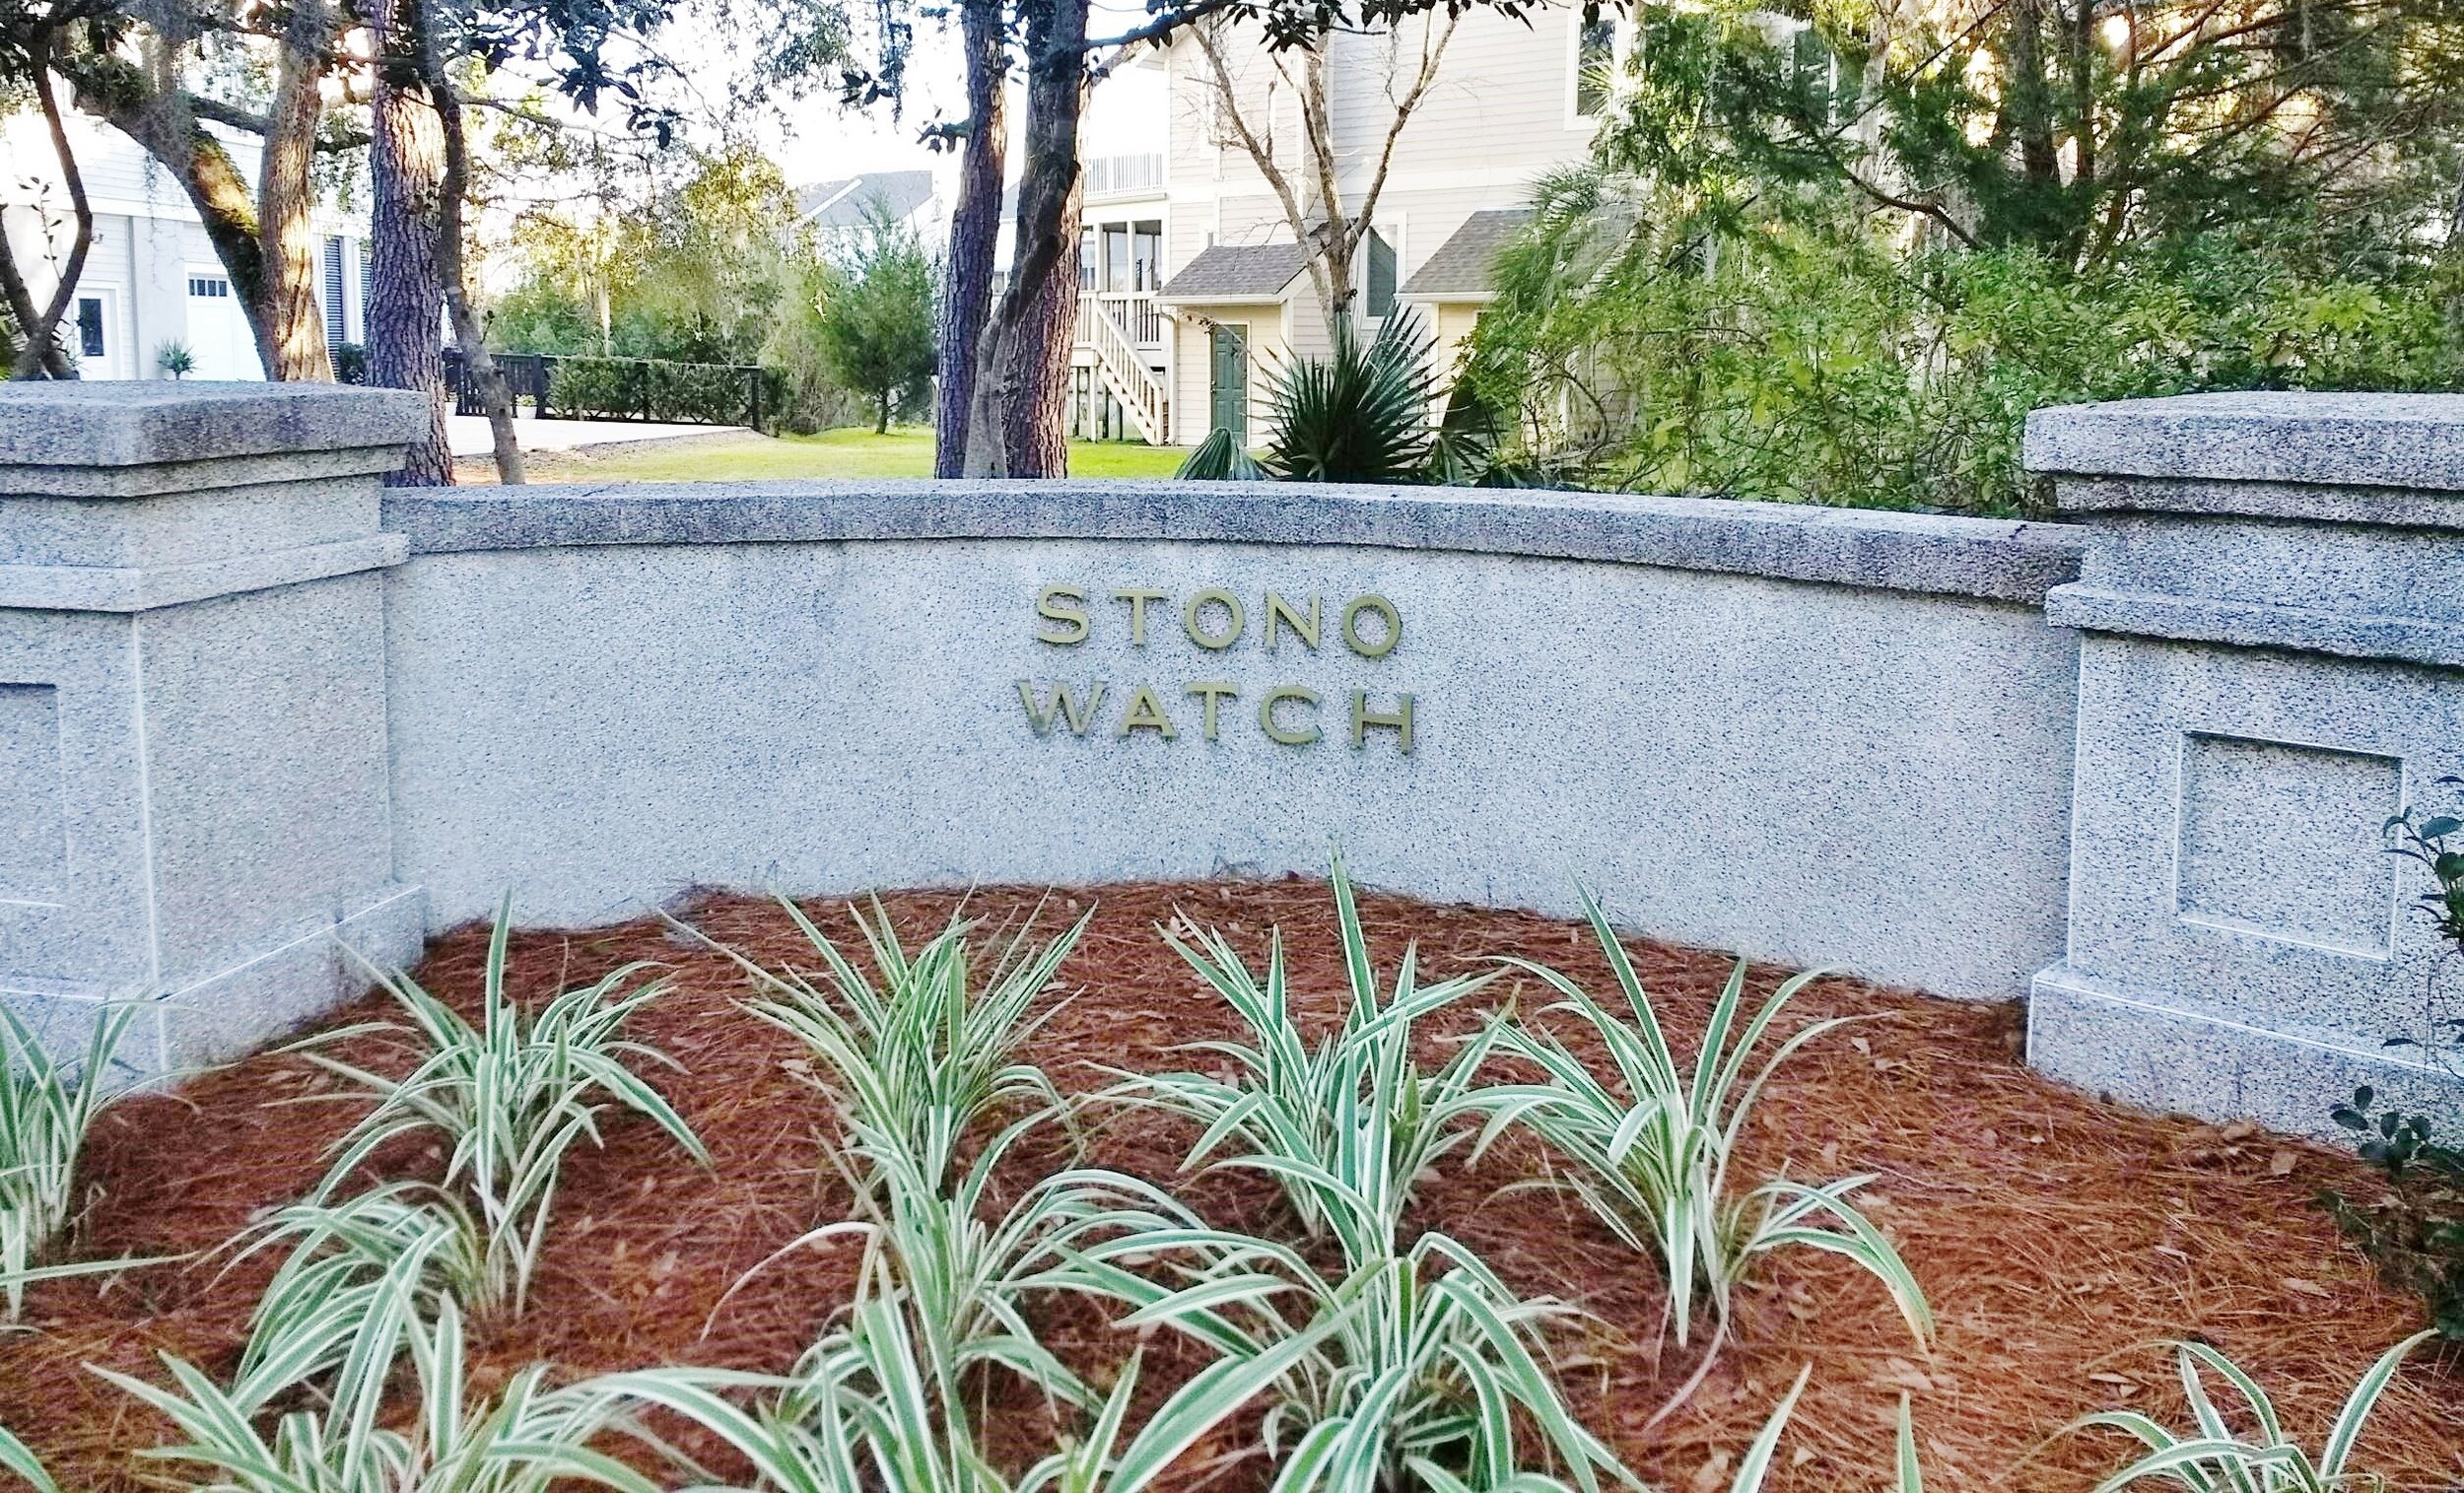 Stono Watch